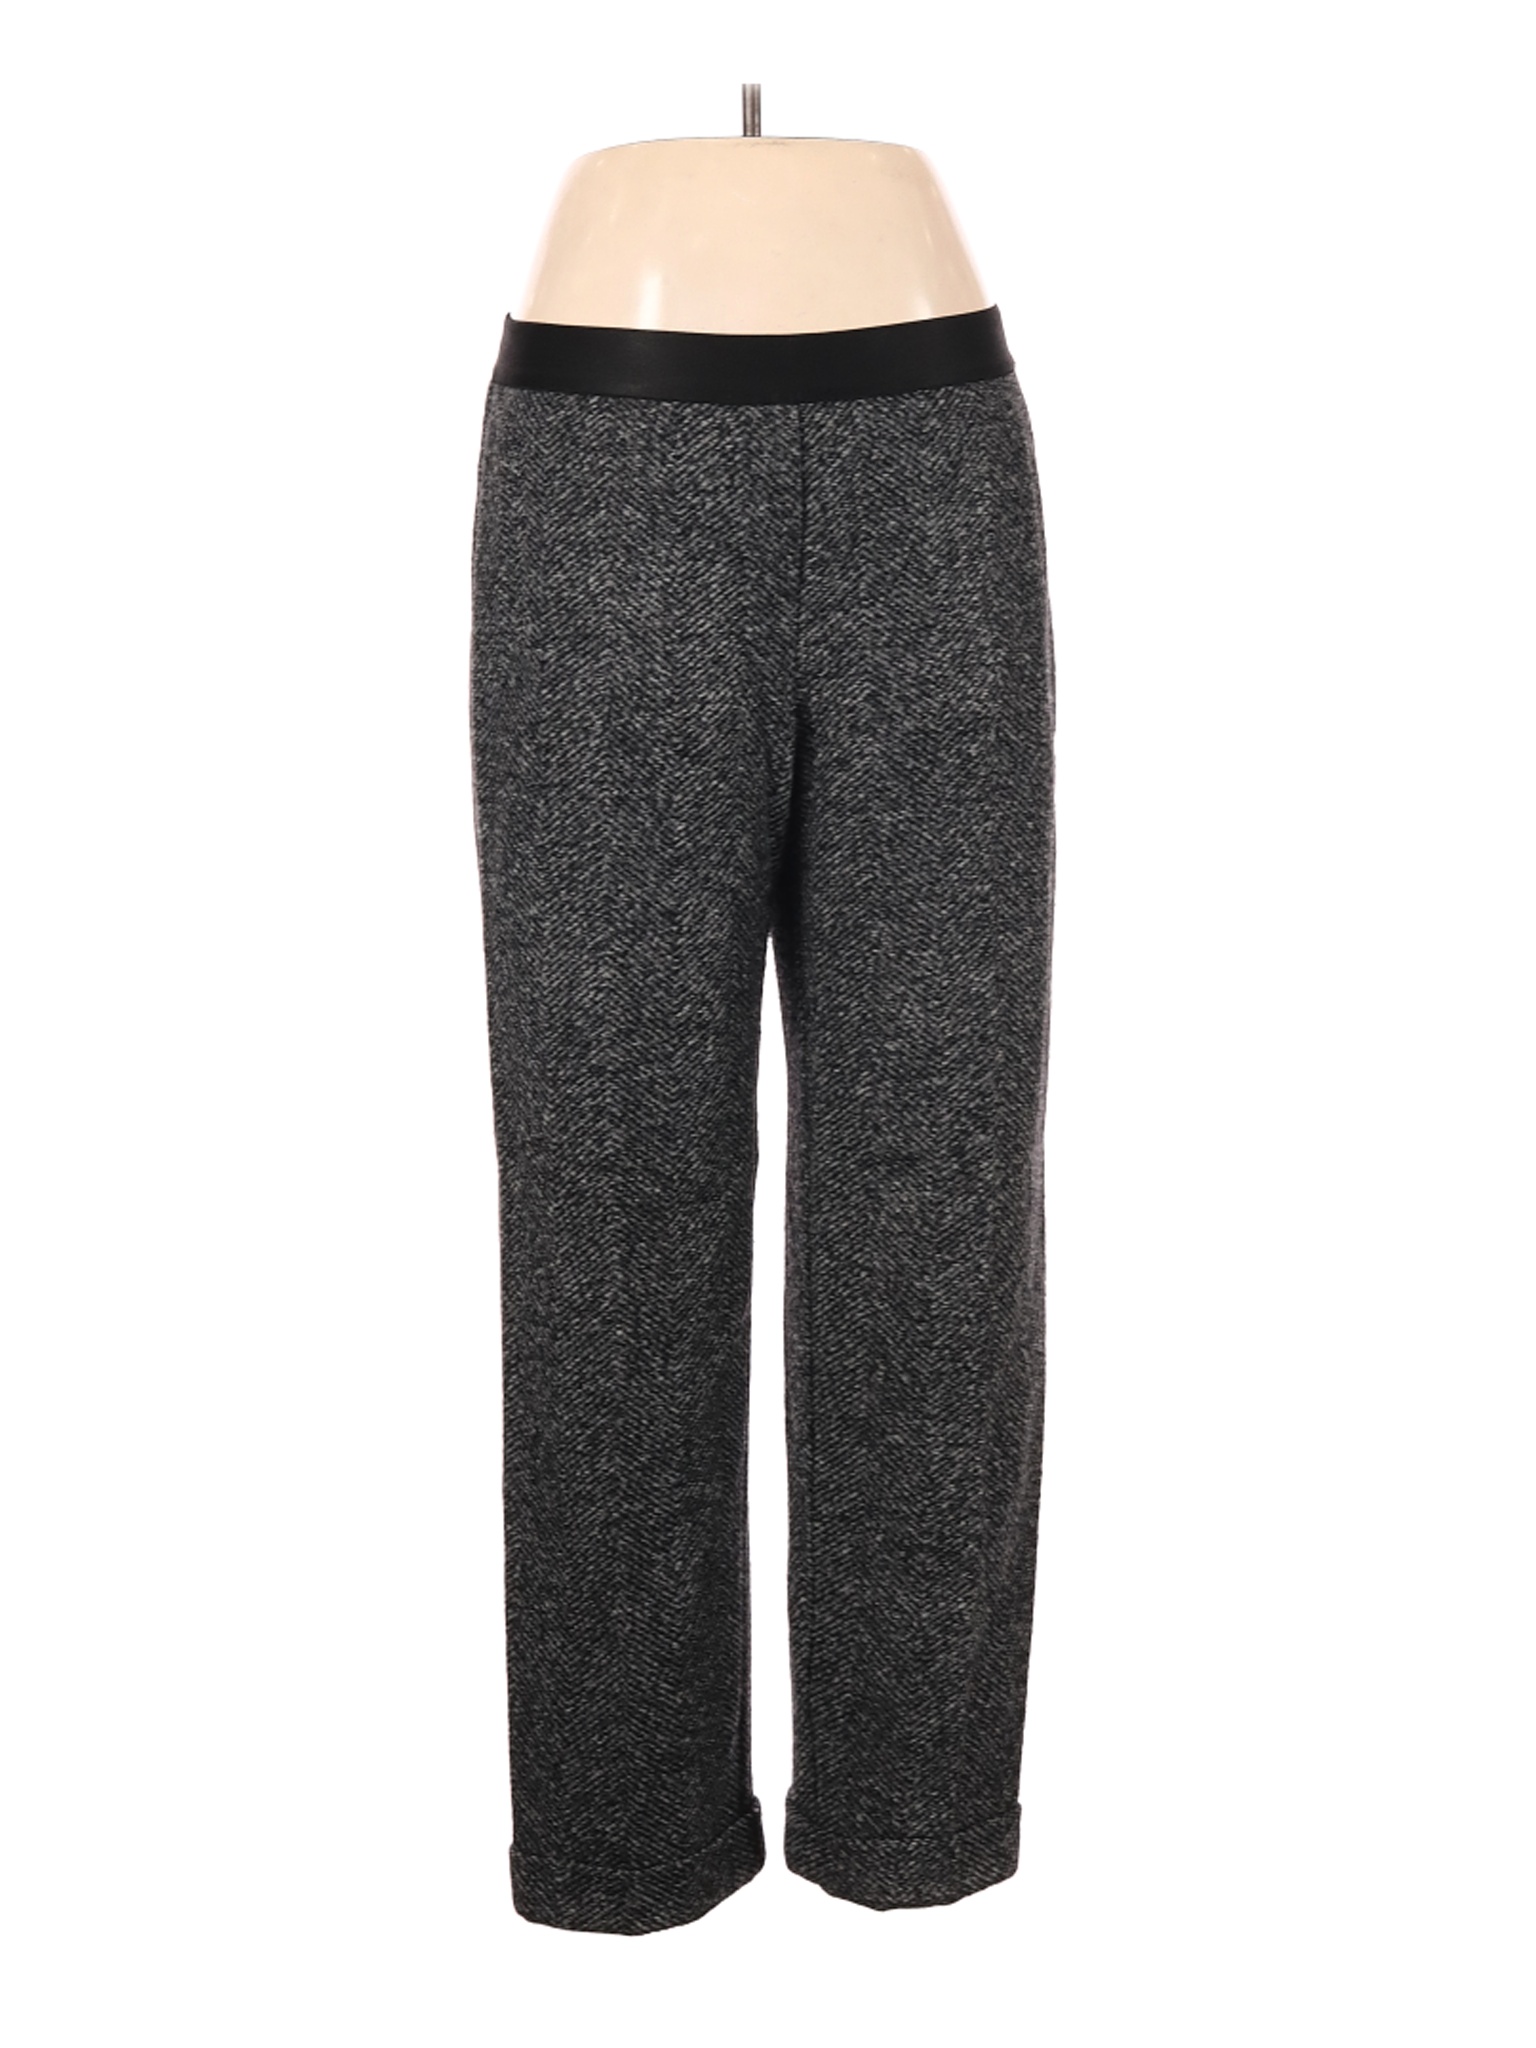 Bailey 44 Women Gray Casual Pants L | eBay